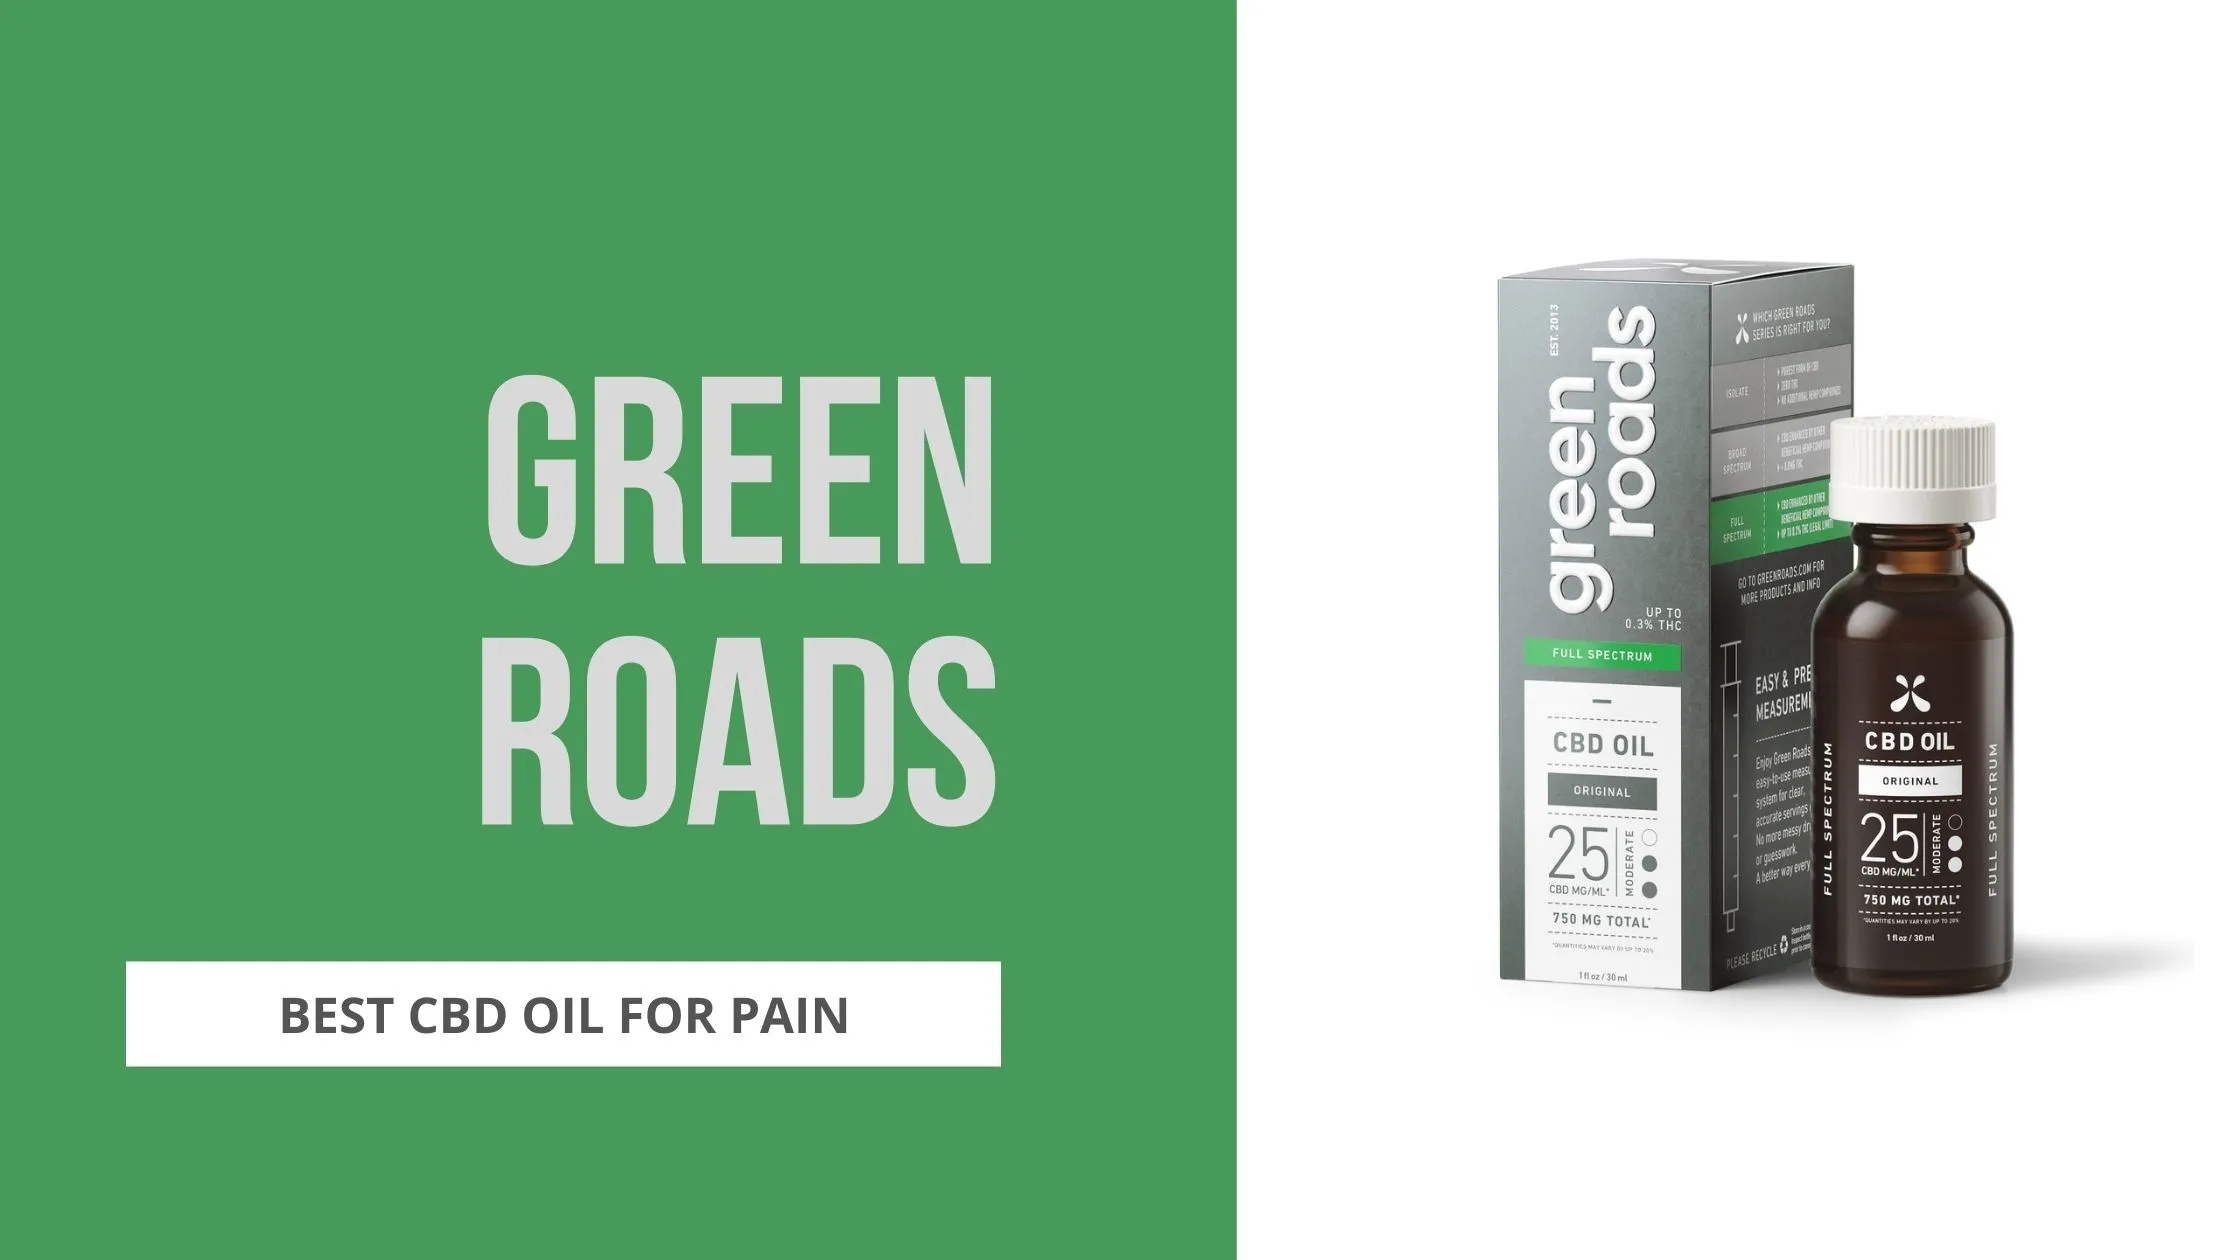 green roads cbd oil for pain